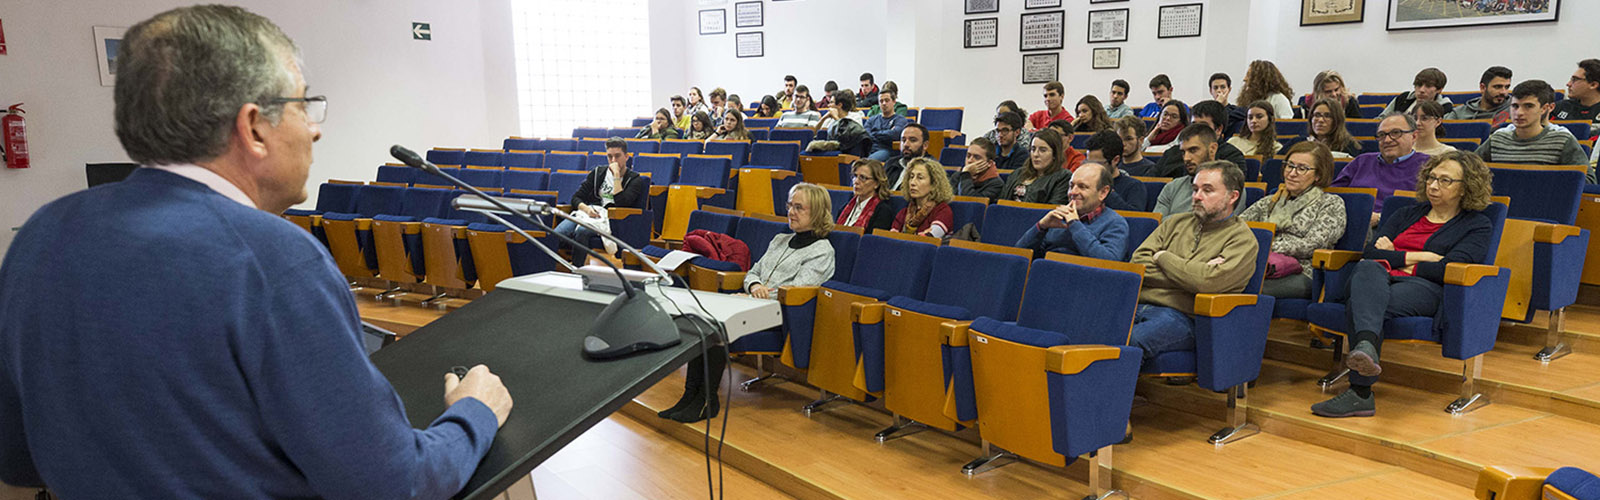 Profesor Hernández Córdoba ha hablado en UMU sobre “Química: Ciencia contra el delito